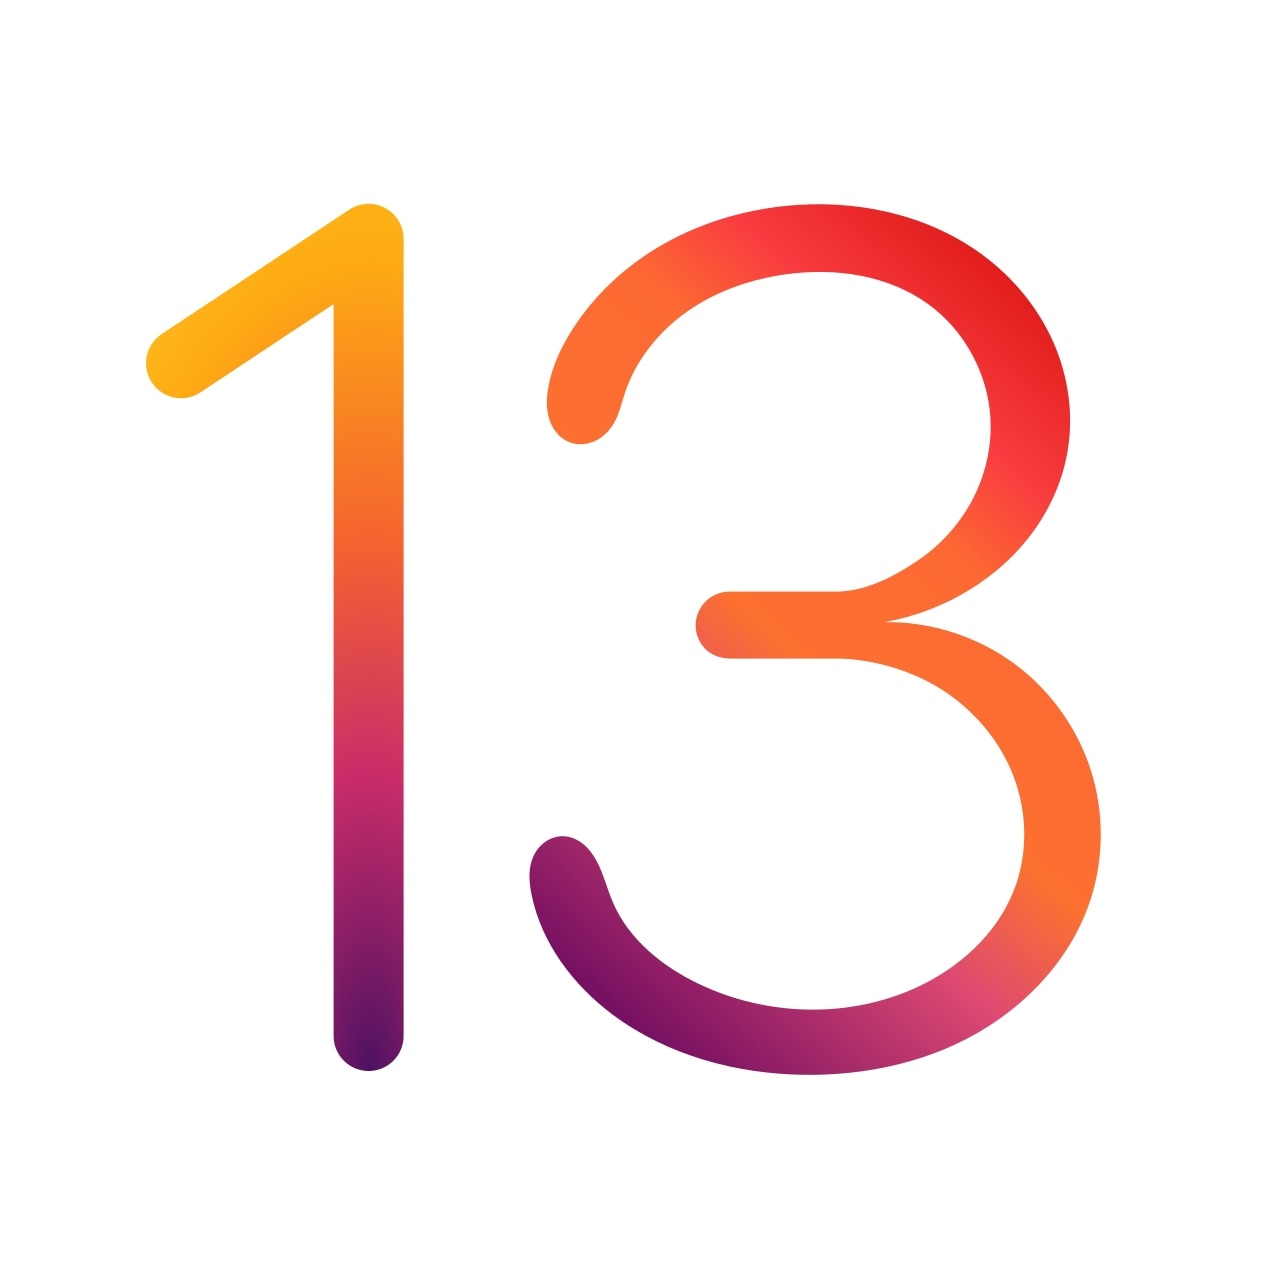 Apple wypuszcza drugą wersję beta iOS 13.4.5, iPadOS 13.4.5, tvOS 13.4.5i watchOS 6.2.5 dla programistów [Updated] 2